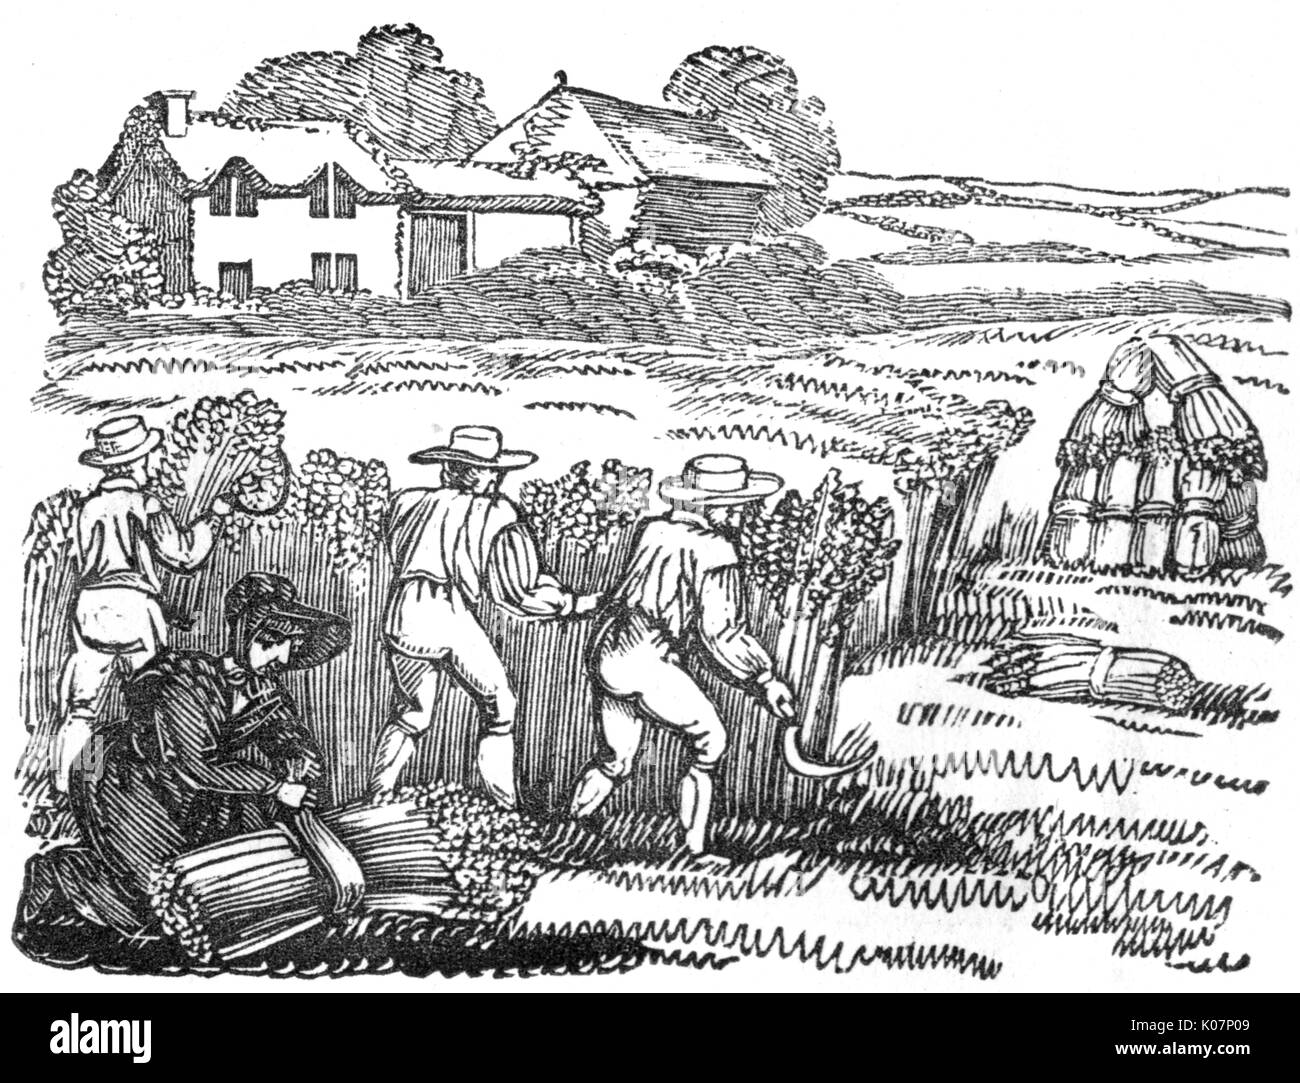 Männer und Frauen Ernte von Weizen in einem Feld: Schneiden mit Sicheln und binden in Bündel, c. 1800 Datum: C 1800 Stockfoto